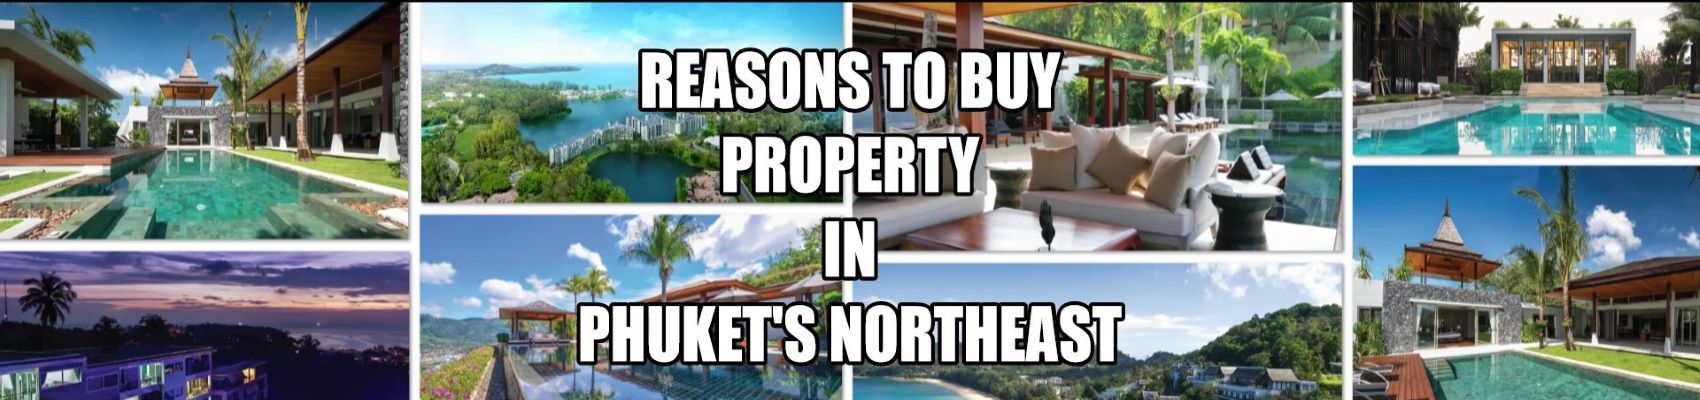 Gründe für den Kauf einer Immobilie im Nordosten